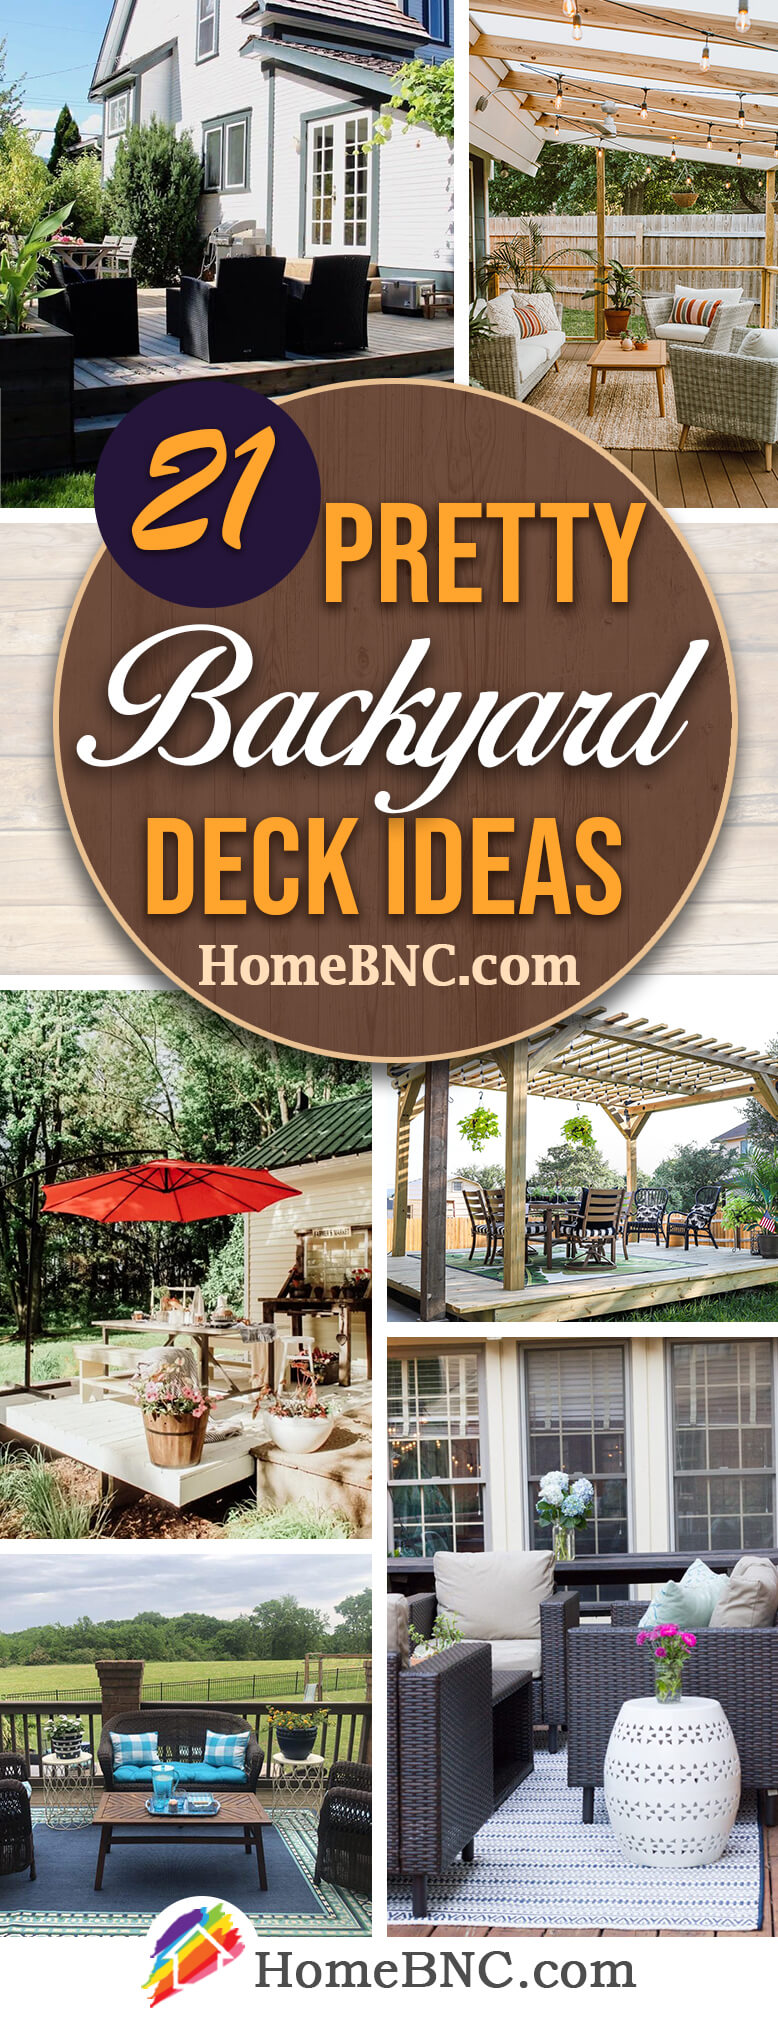 Best Backyard Deck Ideas